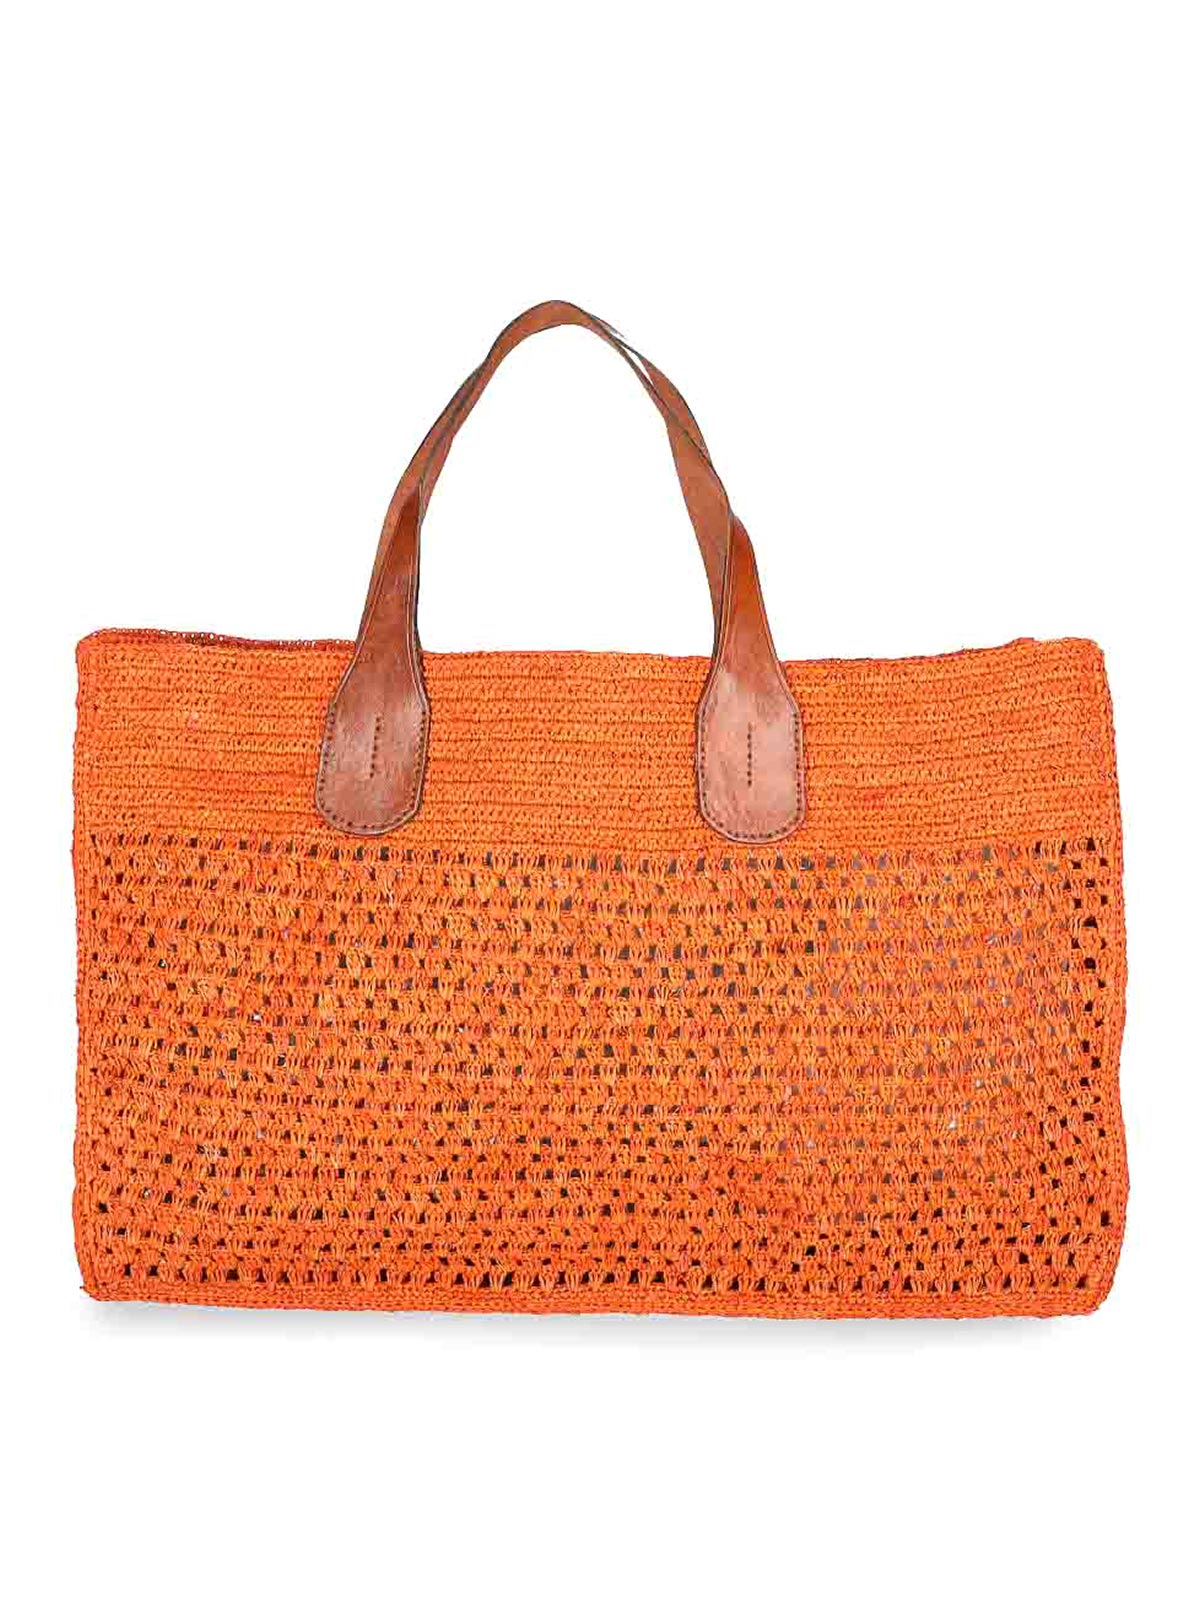 Ibeliv Tote Bag In Orange